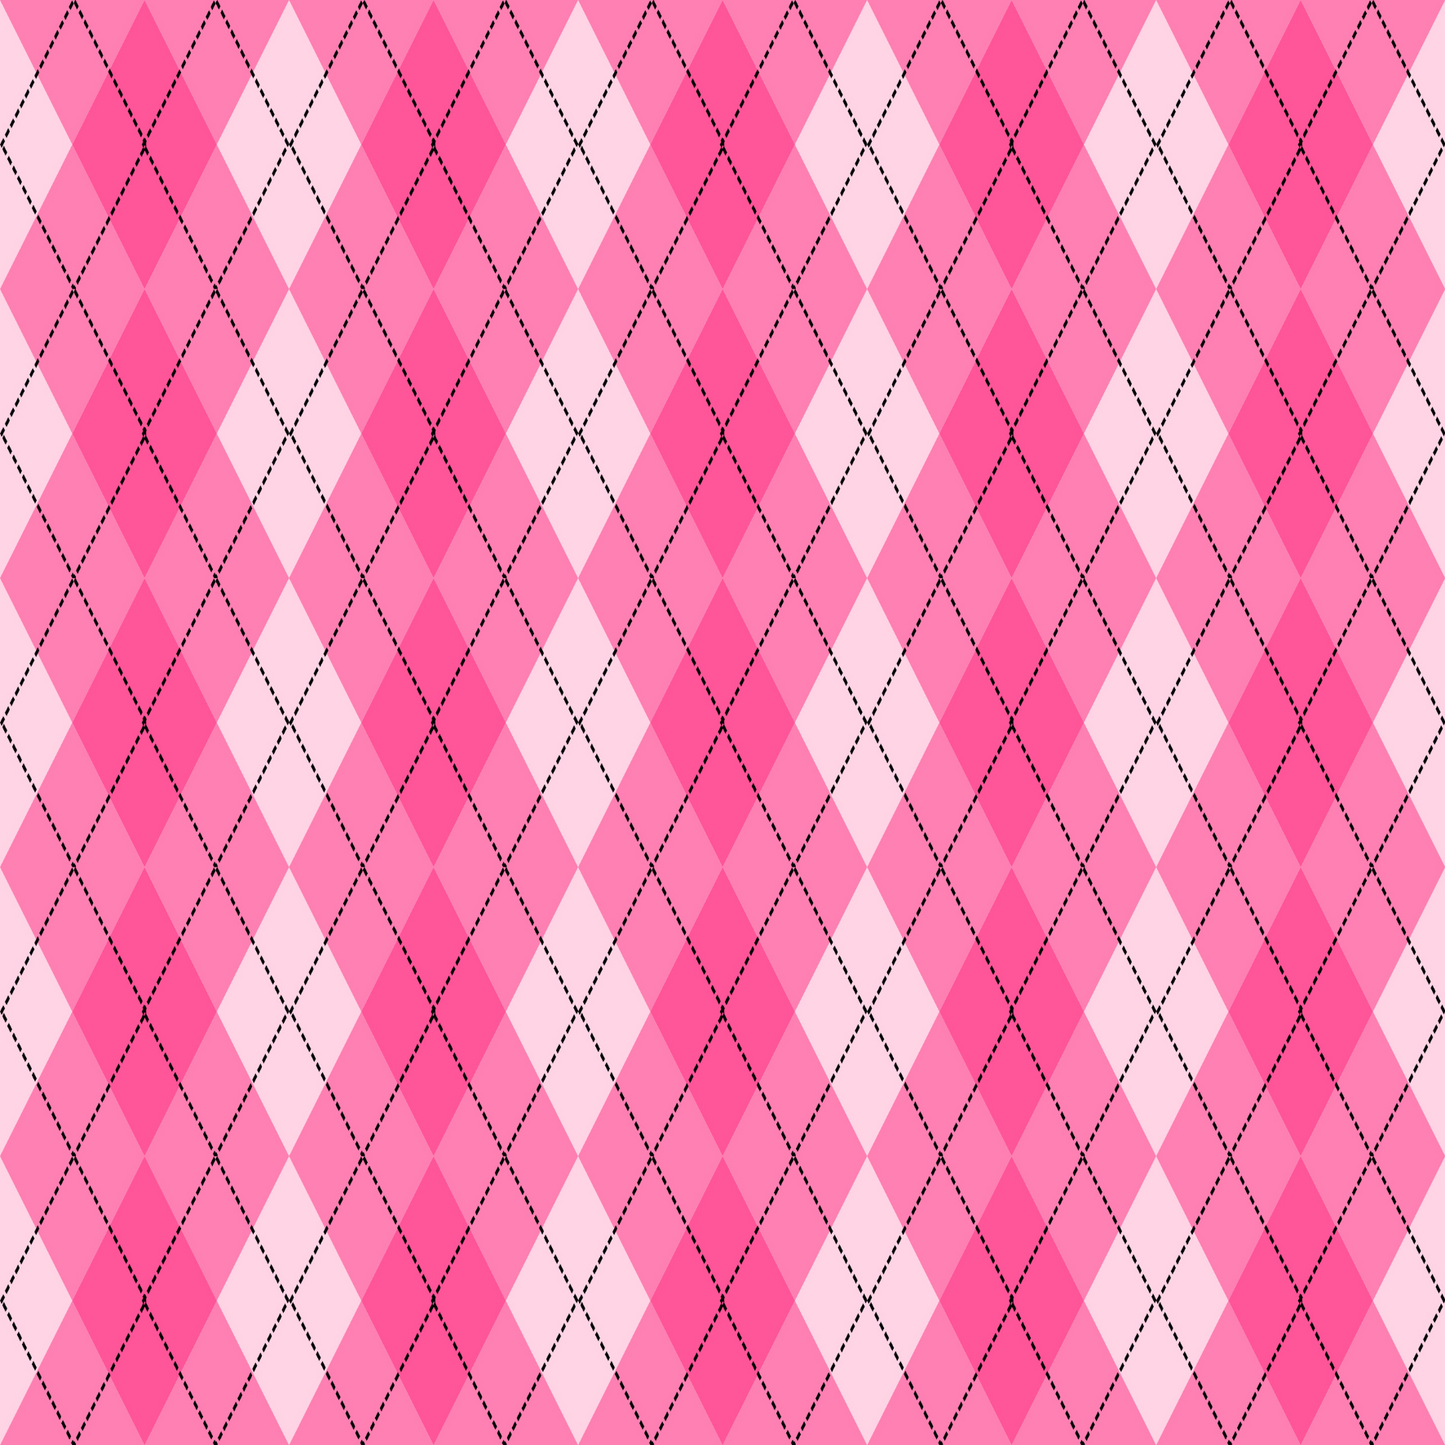 Pink Diamond Plaid Card